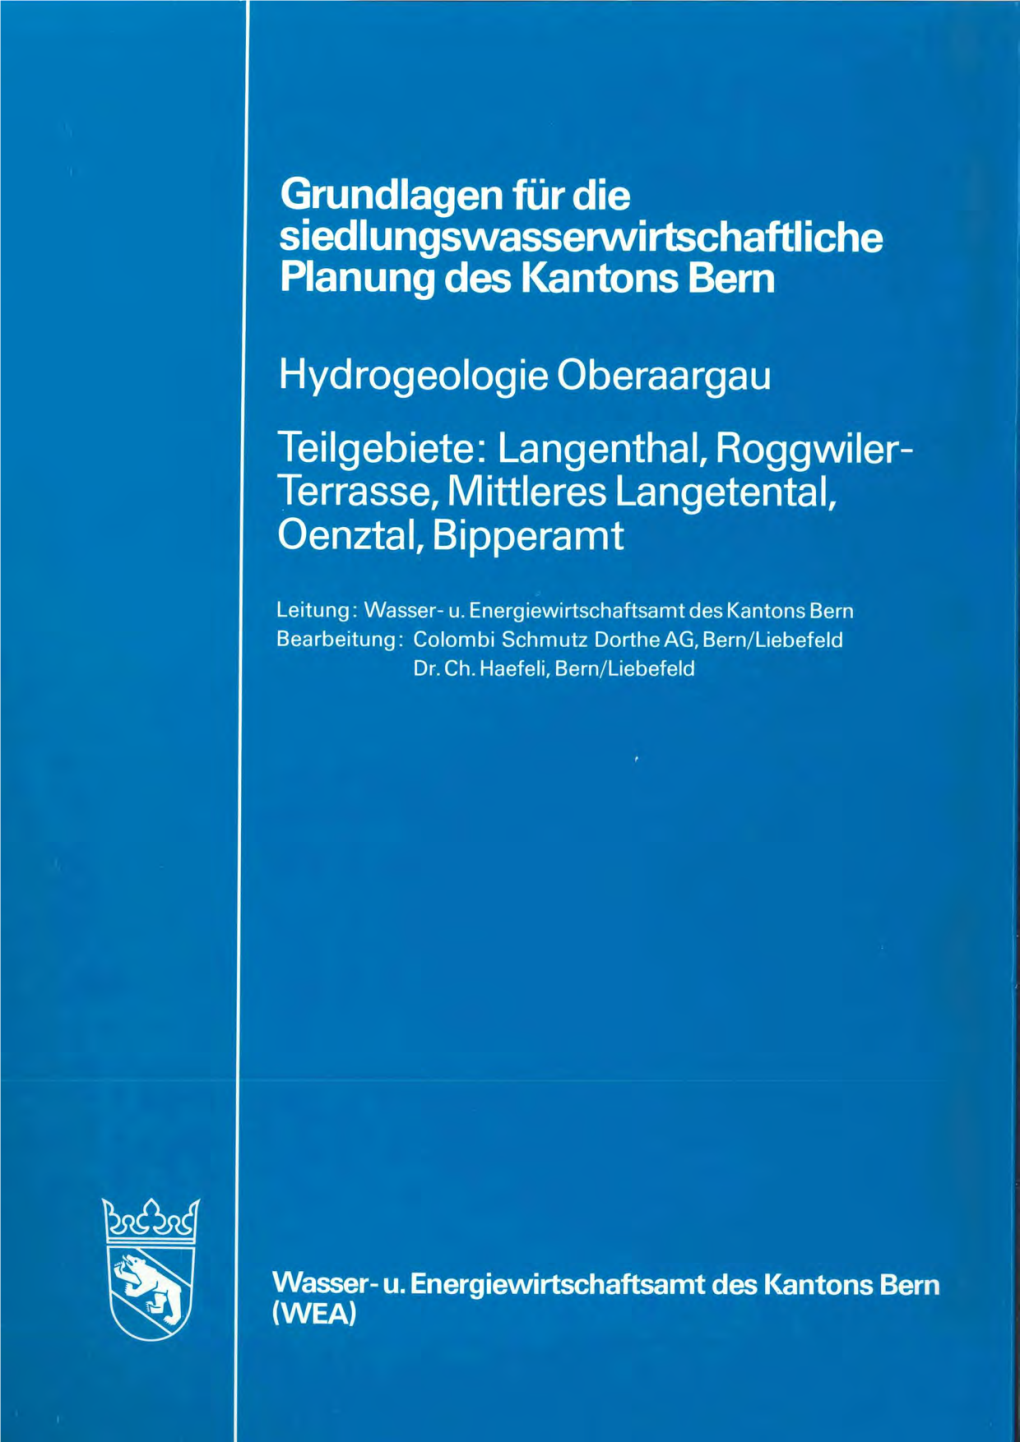 Hydrogeologie Oberaargau: Teilgebiete; Langenthal, Roggwiler